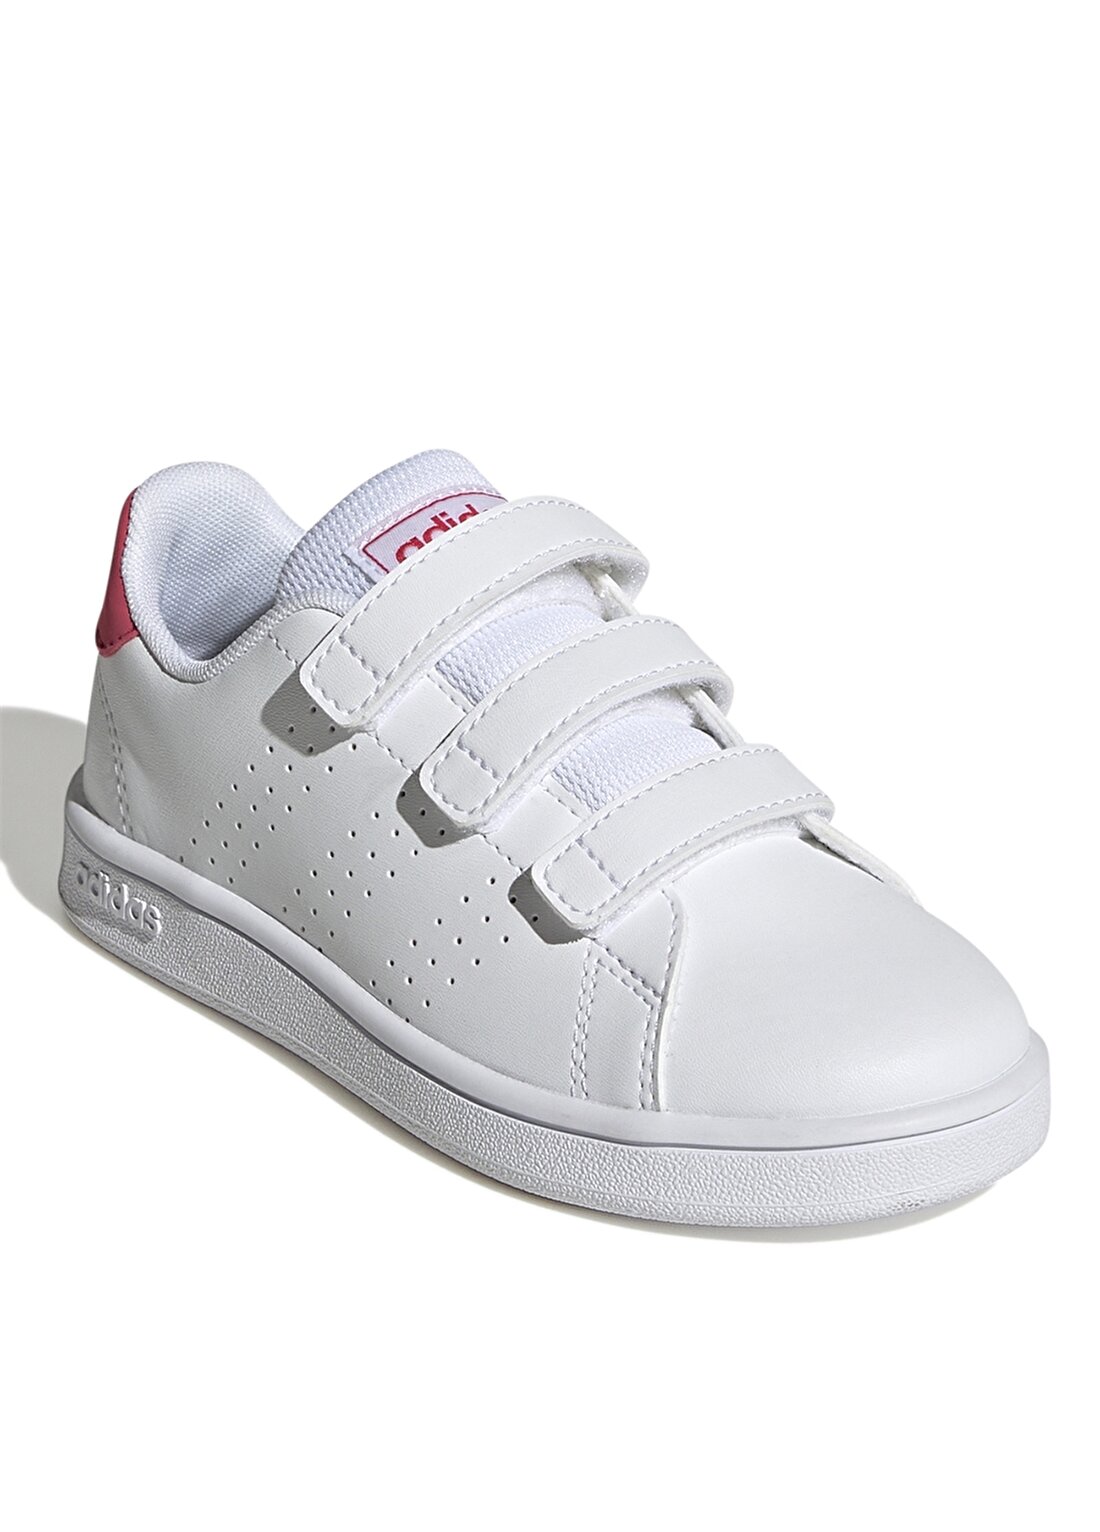 Adidas Pembe - Beyaz Kız Çocuk Yürüyüş Ayakkabısı GW6495 ADVANTAGE CF K